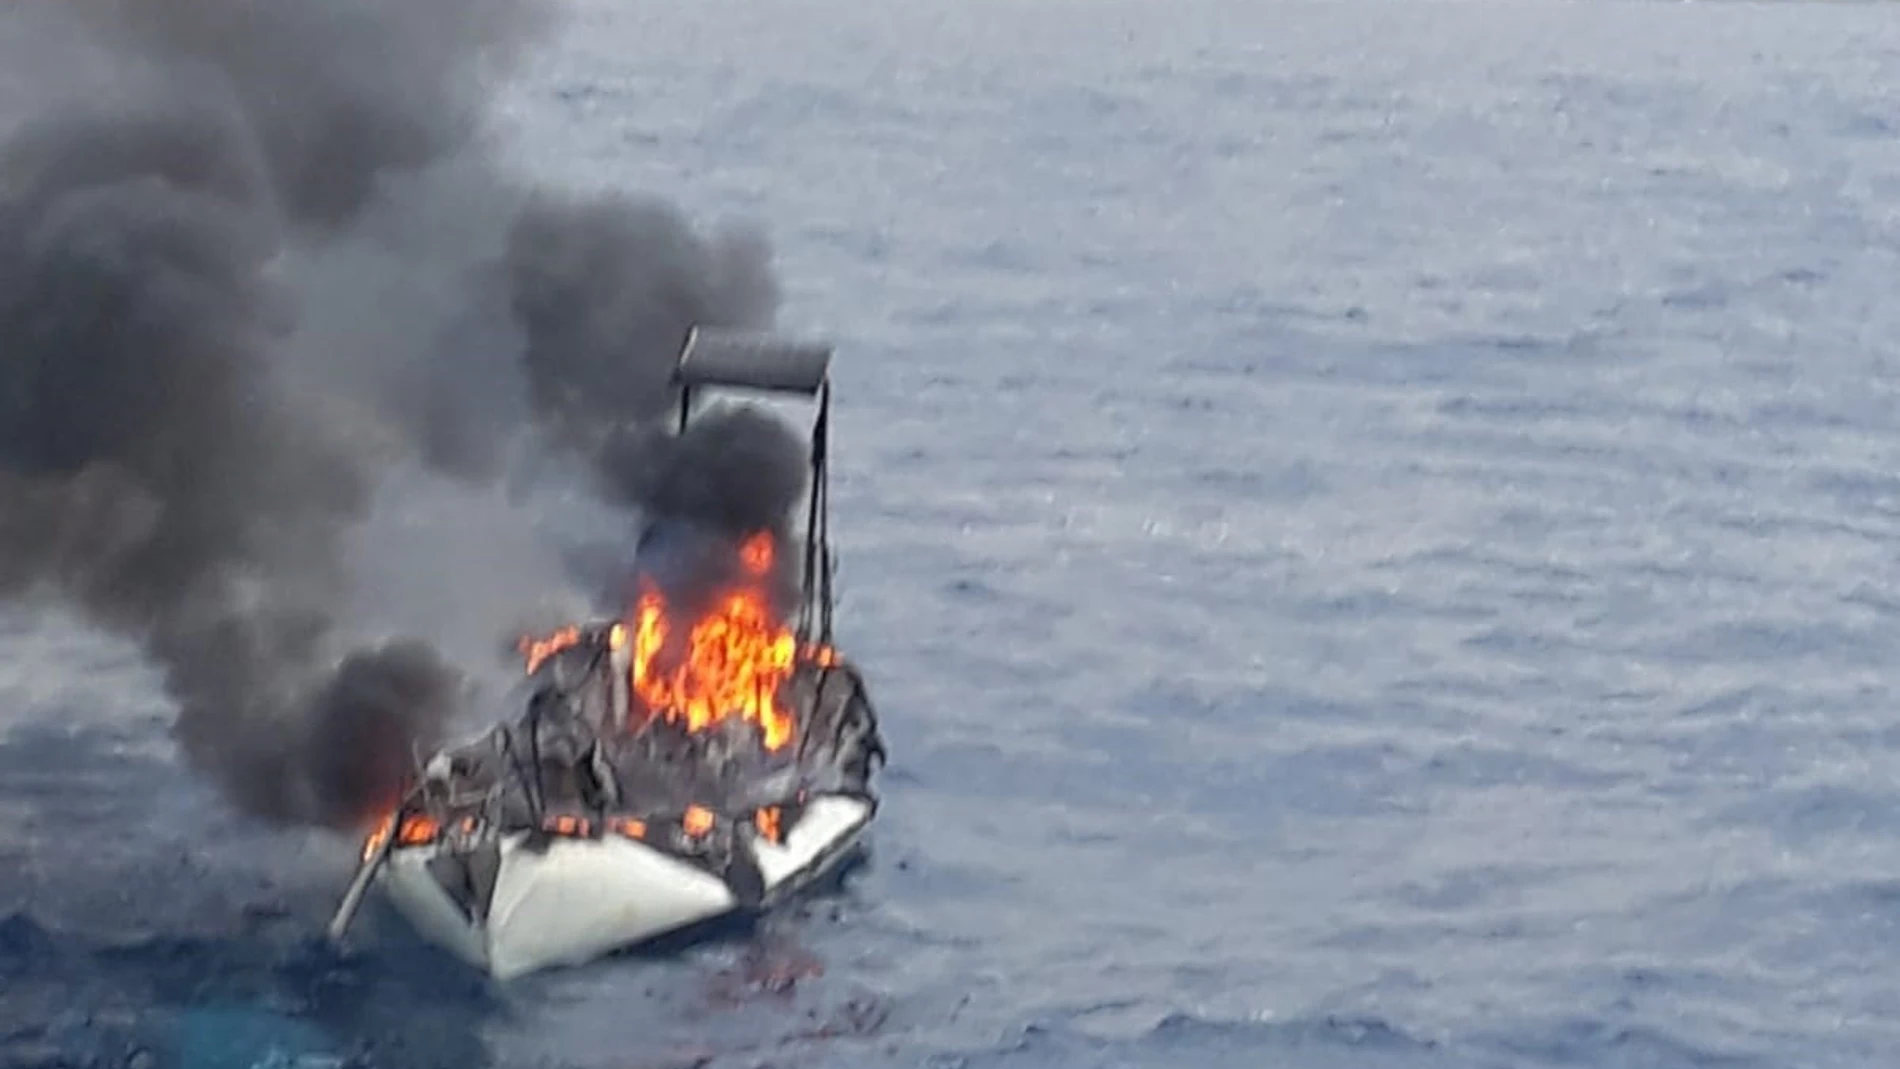 Efectivos del Plan Copla y Salvamento Marítimo acuden al incendio de un velero en la playa d Percheles en Mazarrón